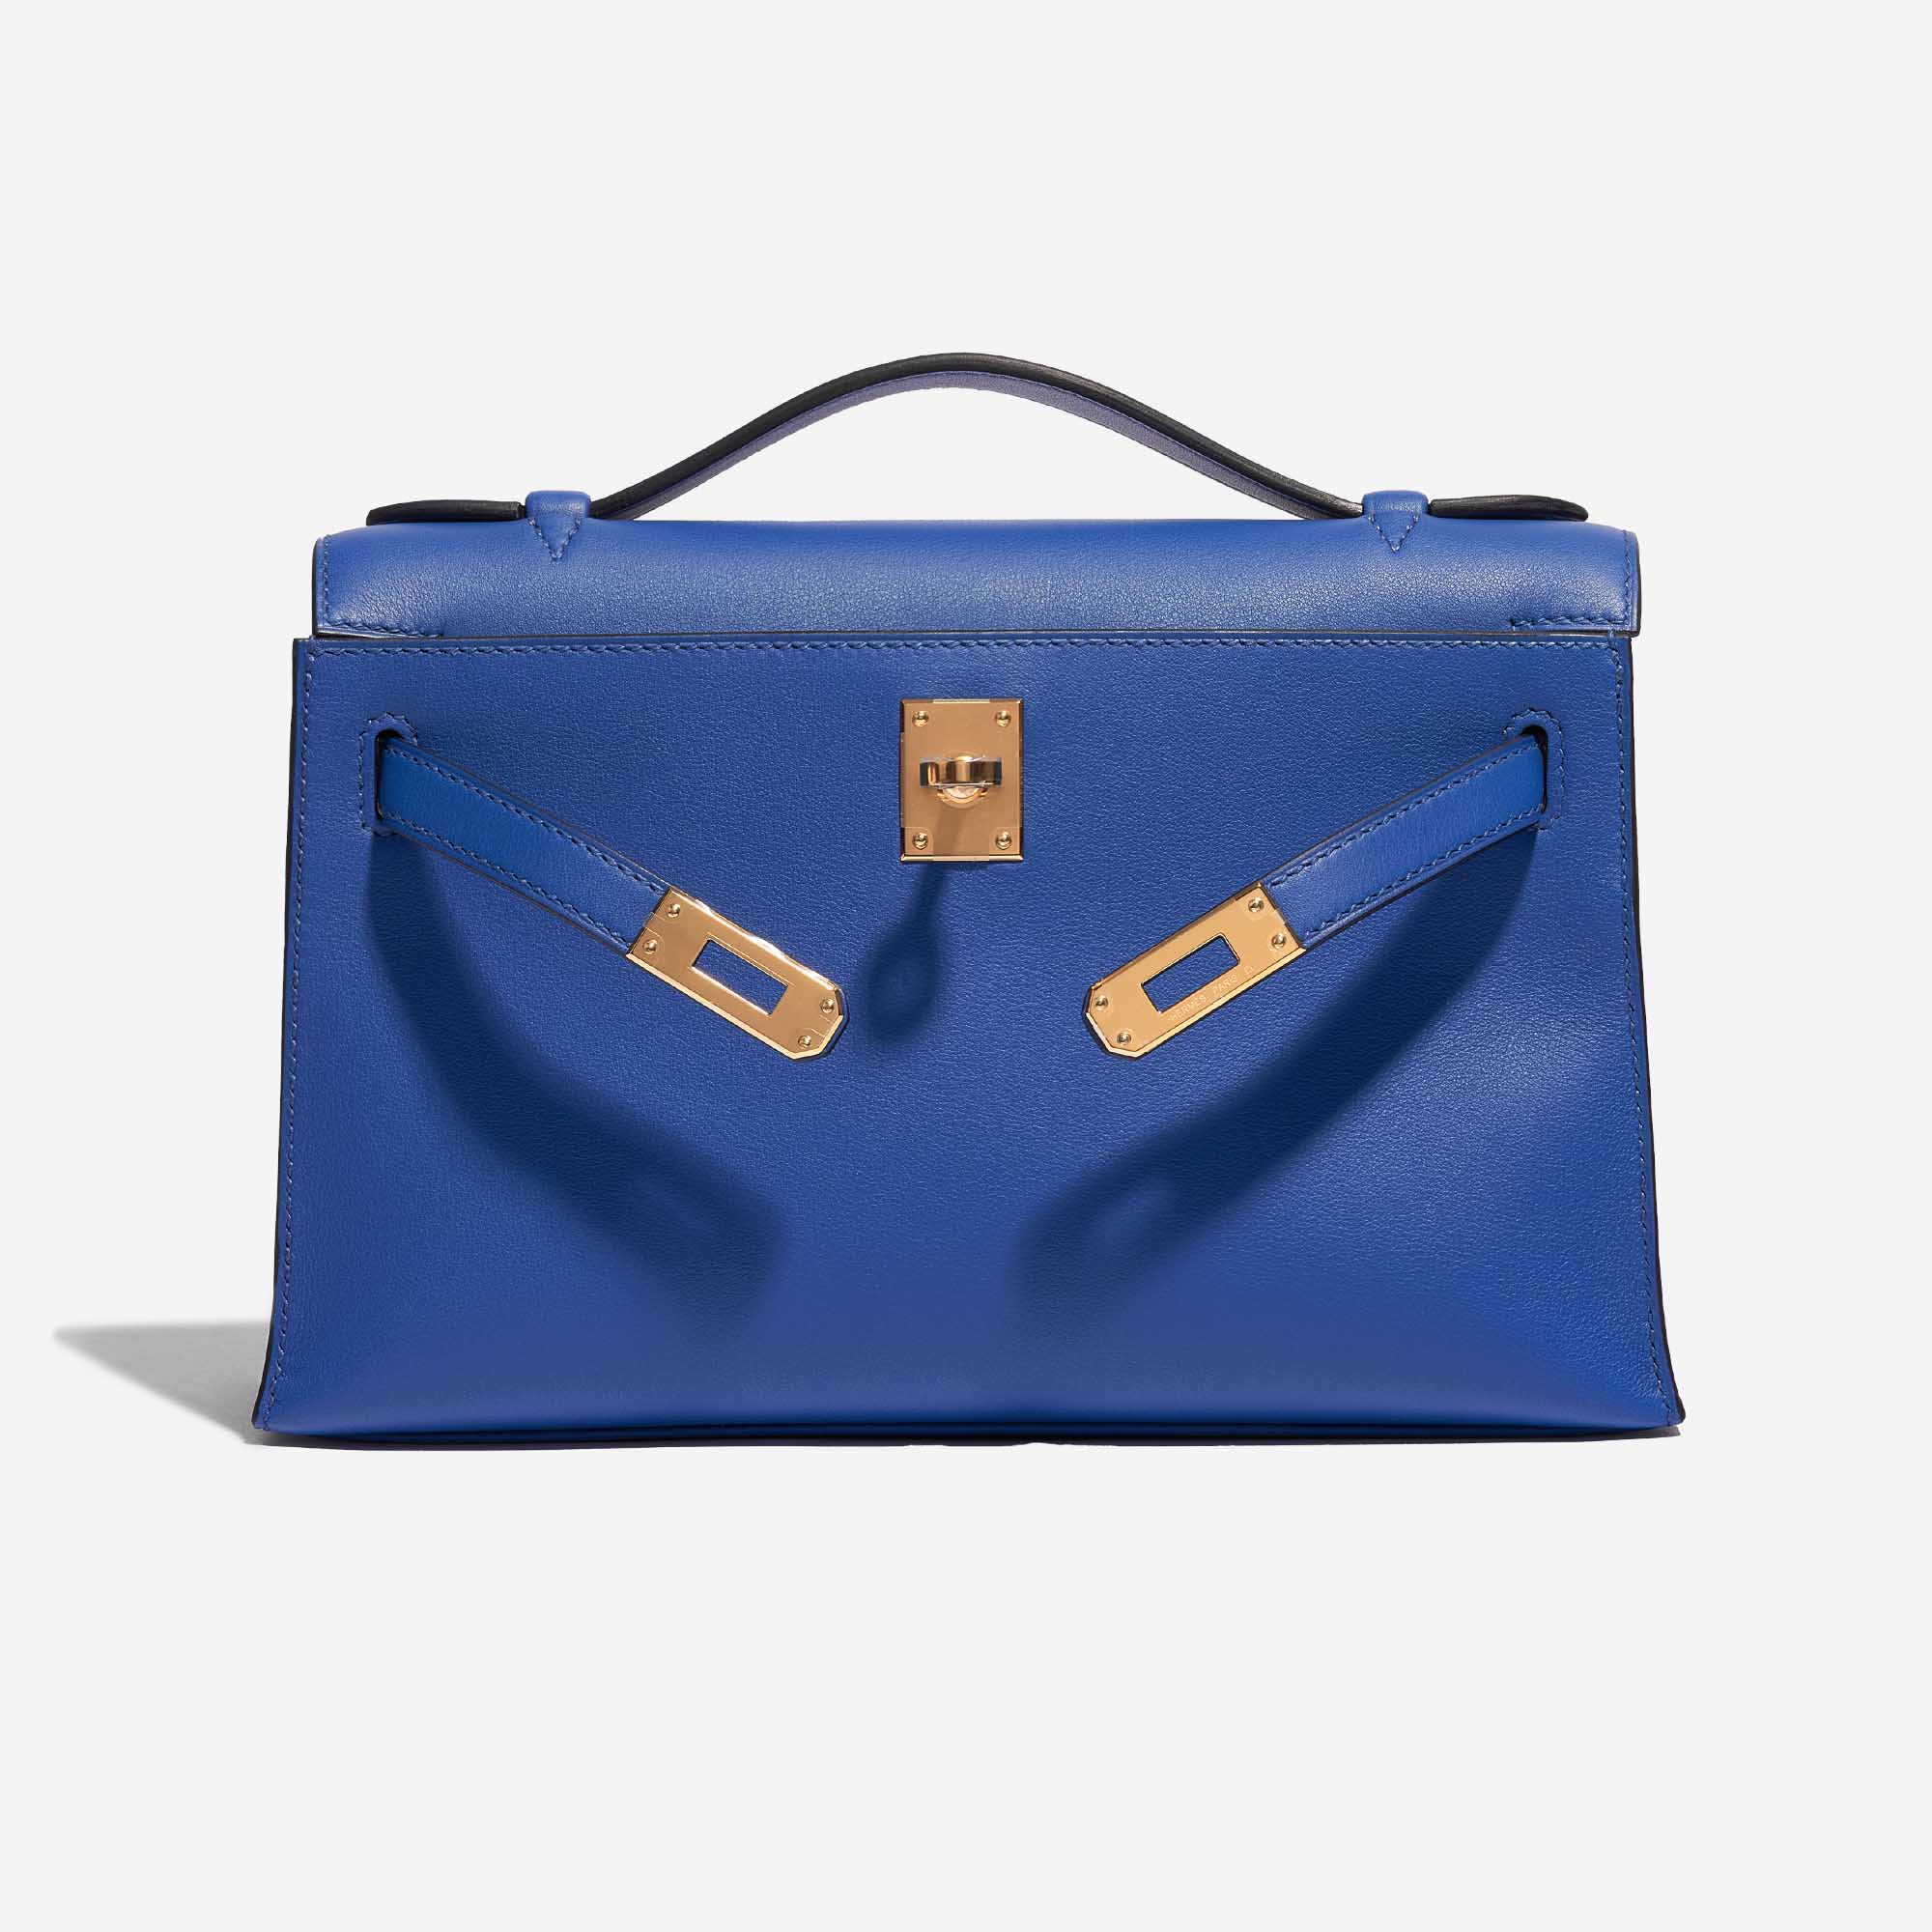 Pre-owned Hermès Tasche Kelly Pochette Swift Blue de France Blue Front Open | Verkaufen Sie Ihre Designer-Tasche auf Saclab.com